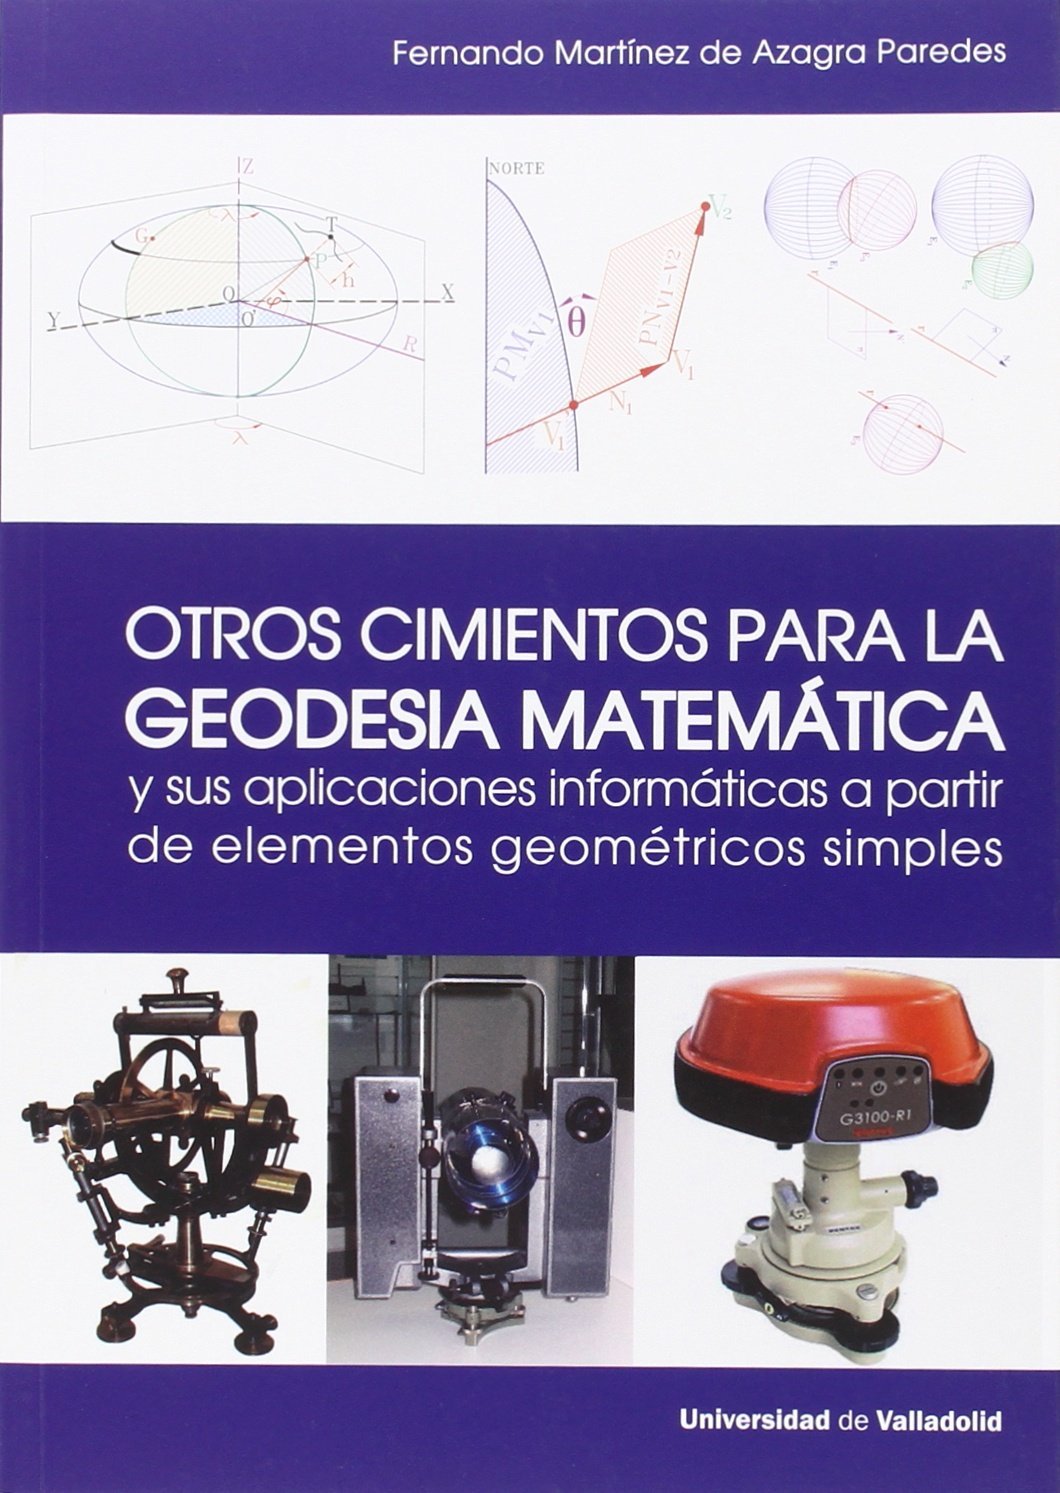 Imagen de portada del libro Otros cimientos para la geodesia matemática y sus aplicaciones informáticas a partir de elementos geométricos simples